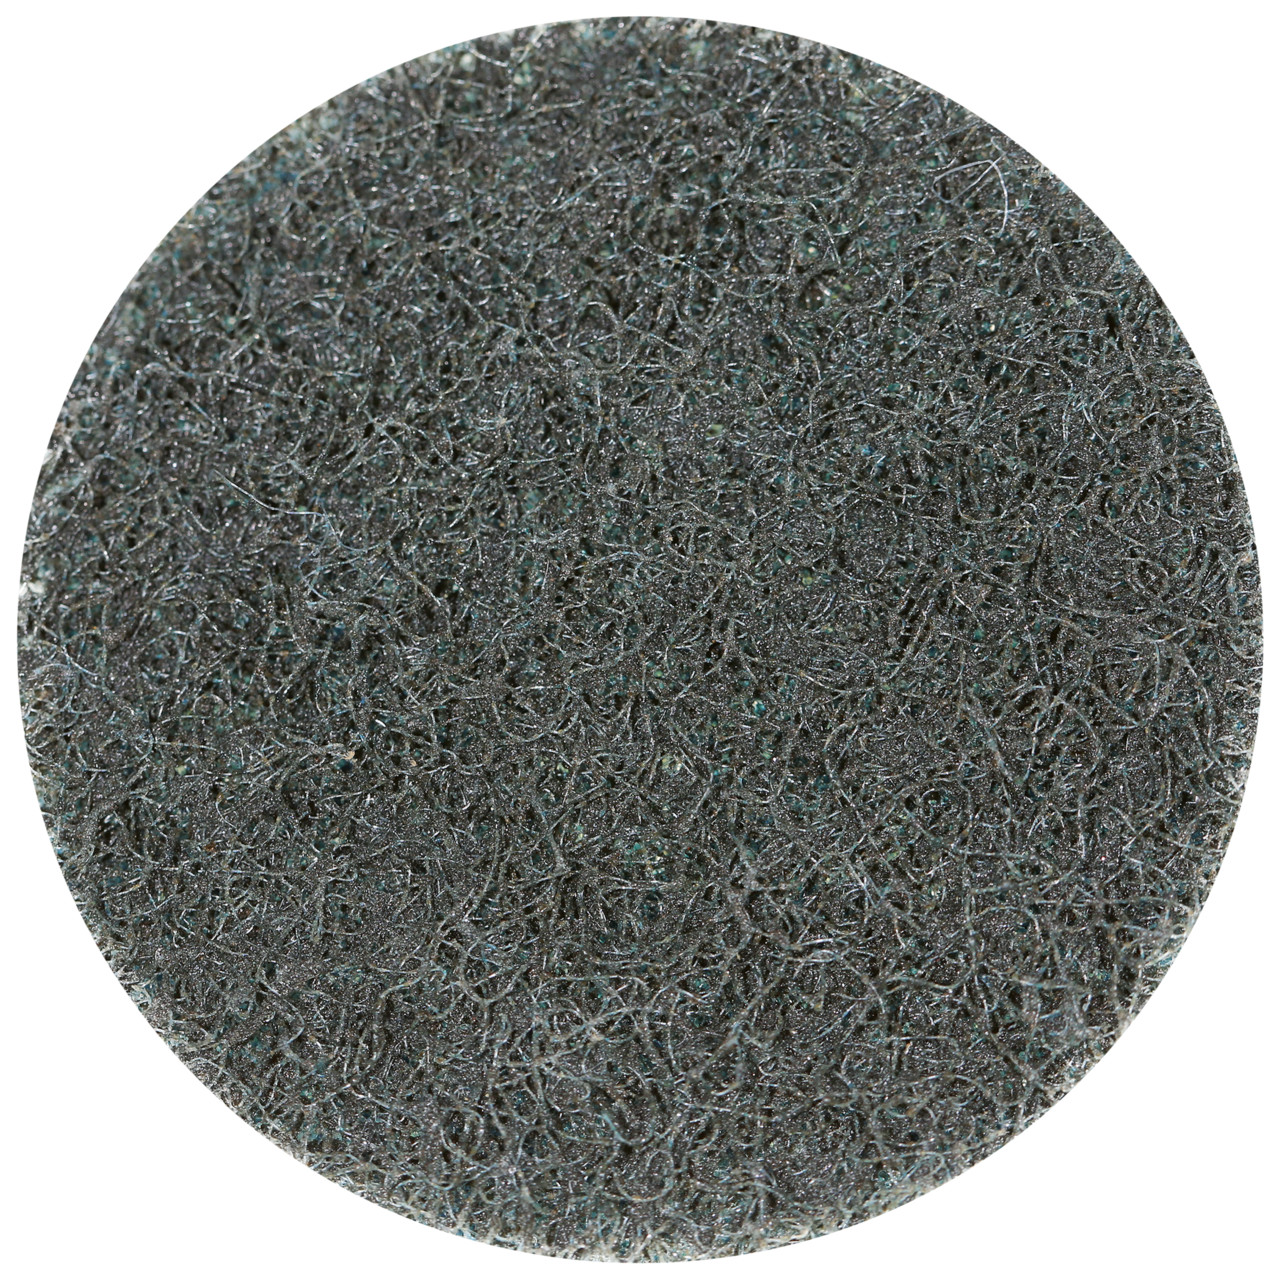 Tyrolit SCM QUICK CHANGE DISC Dimensione 50xS Per acciaio, acciaio inox, metalli non ferrosi, plastica e legno, MEDIO, forma: QDISC, Art. 112590